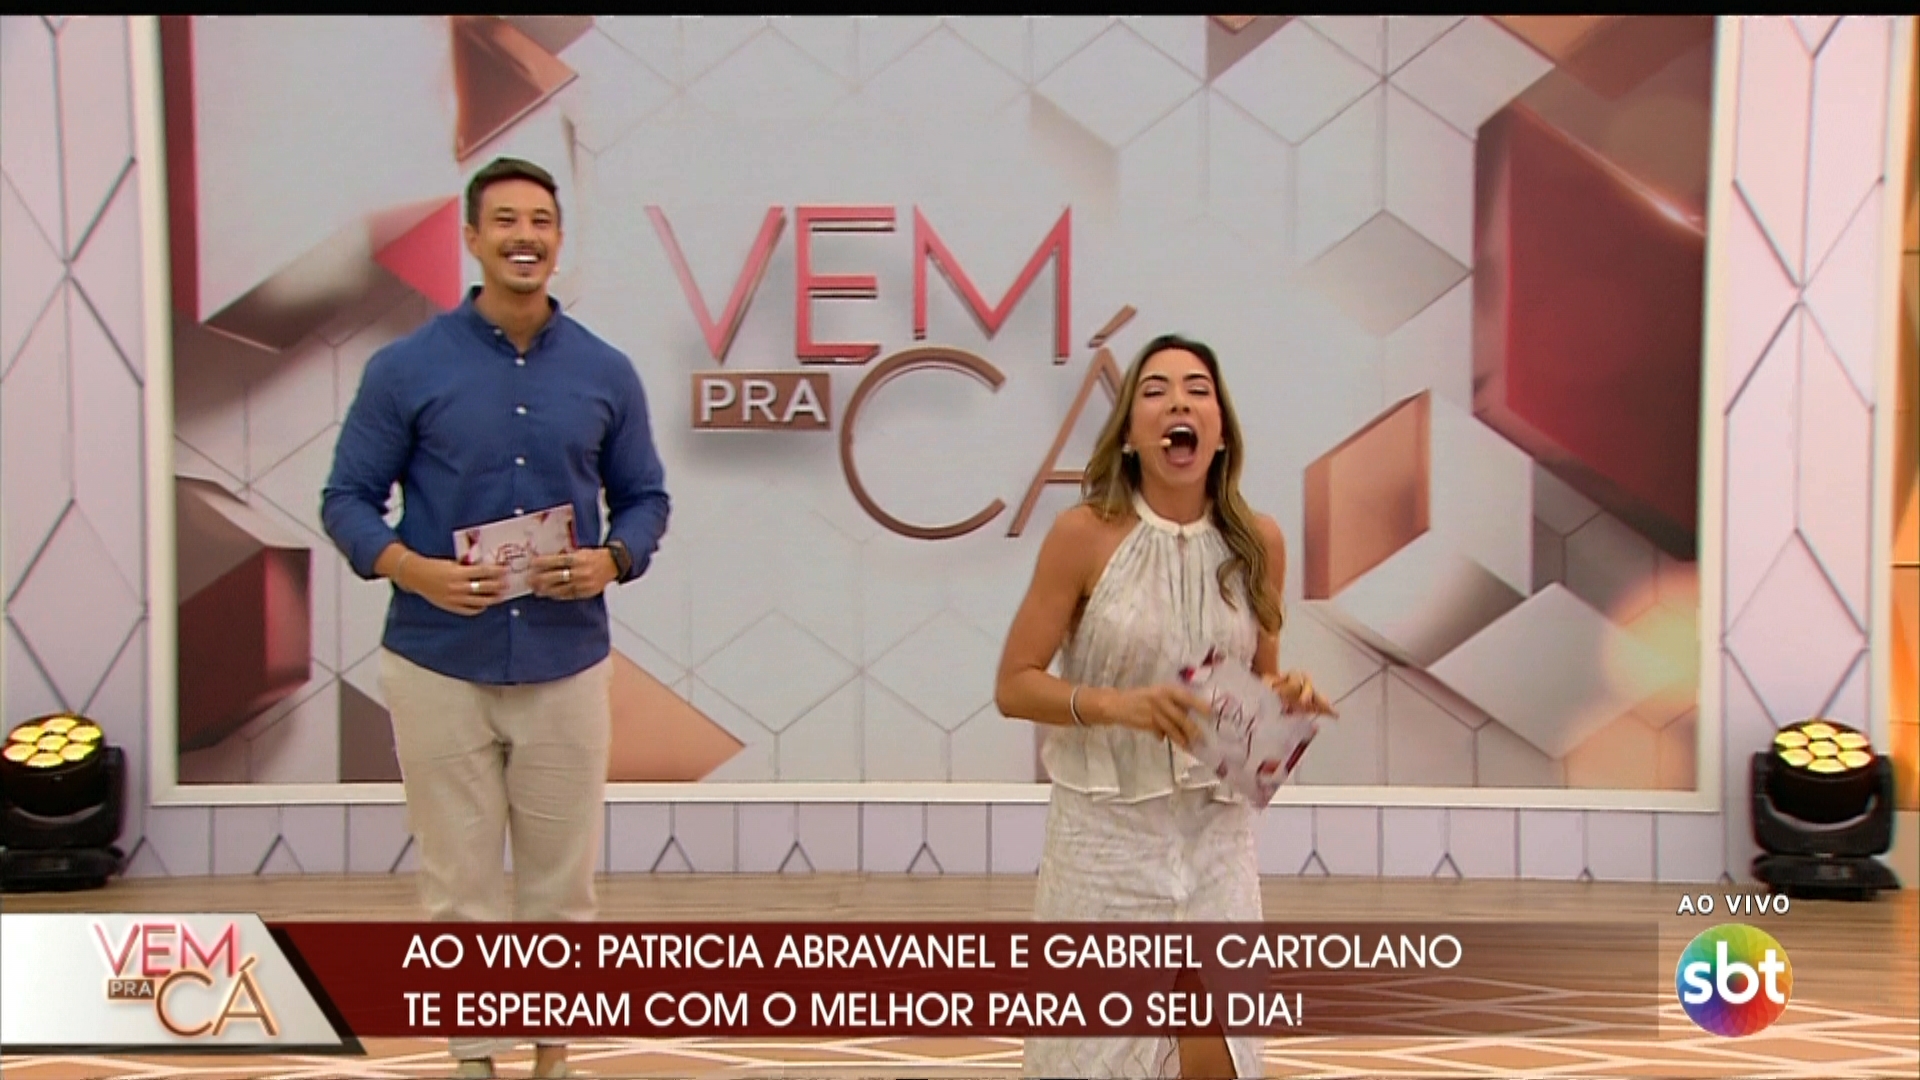 Patricia Abravanel e Gabriel Cartolano comandam o programa Vem Pra Cá, ao vivo no SBT (Créditos: Reprodução)